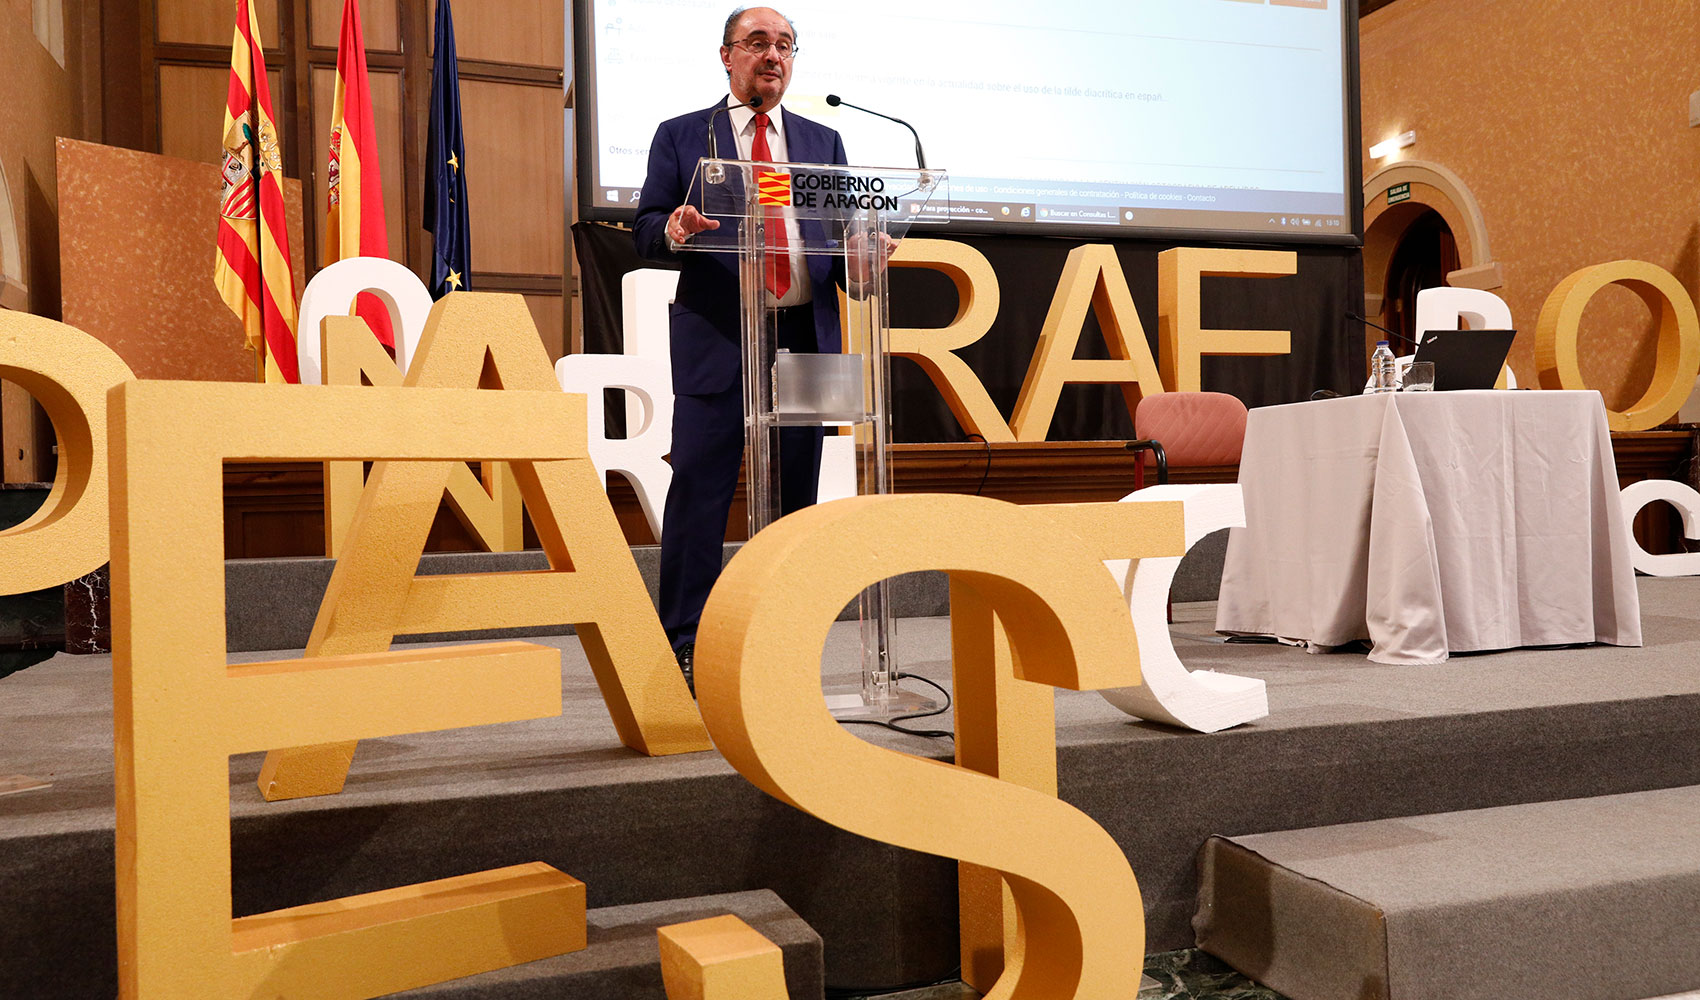 El presidente del Gobierno de Aragn, Javier Lambn, en la presentacin en Zaragoza de 'Enclave RAE'...